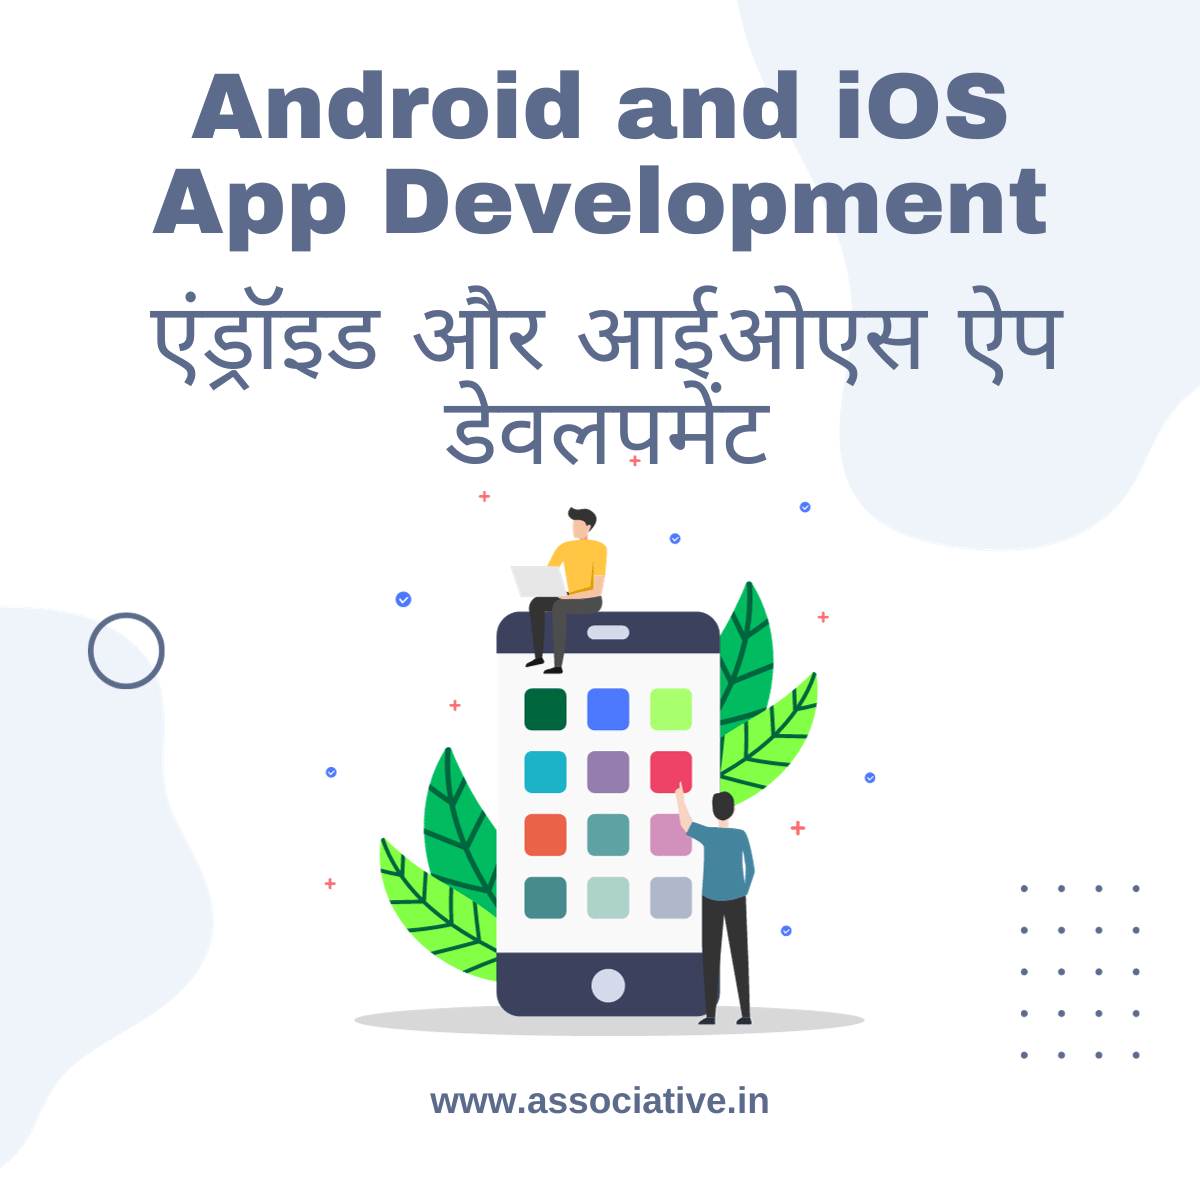 Android and iOS App Development एंड्रॉइड और आईओएस ऐप डेवलपमेंट